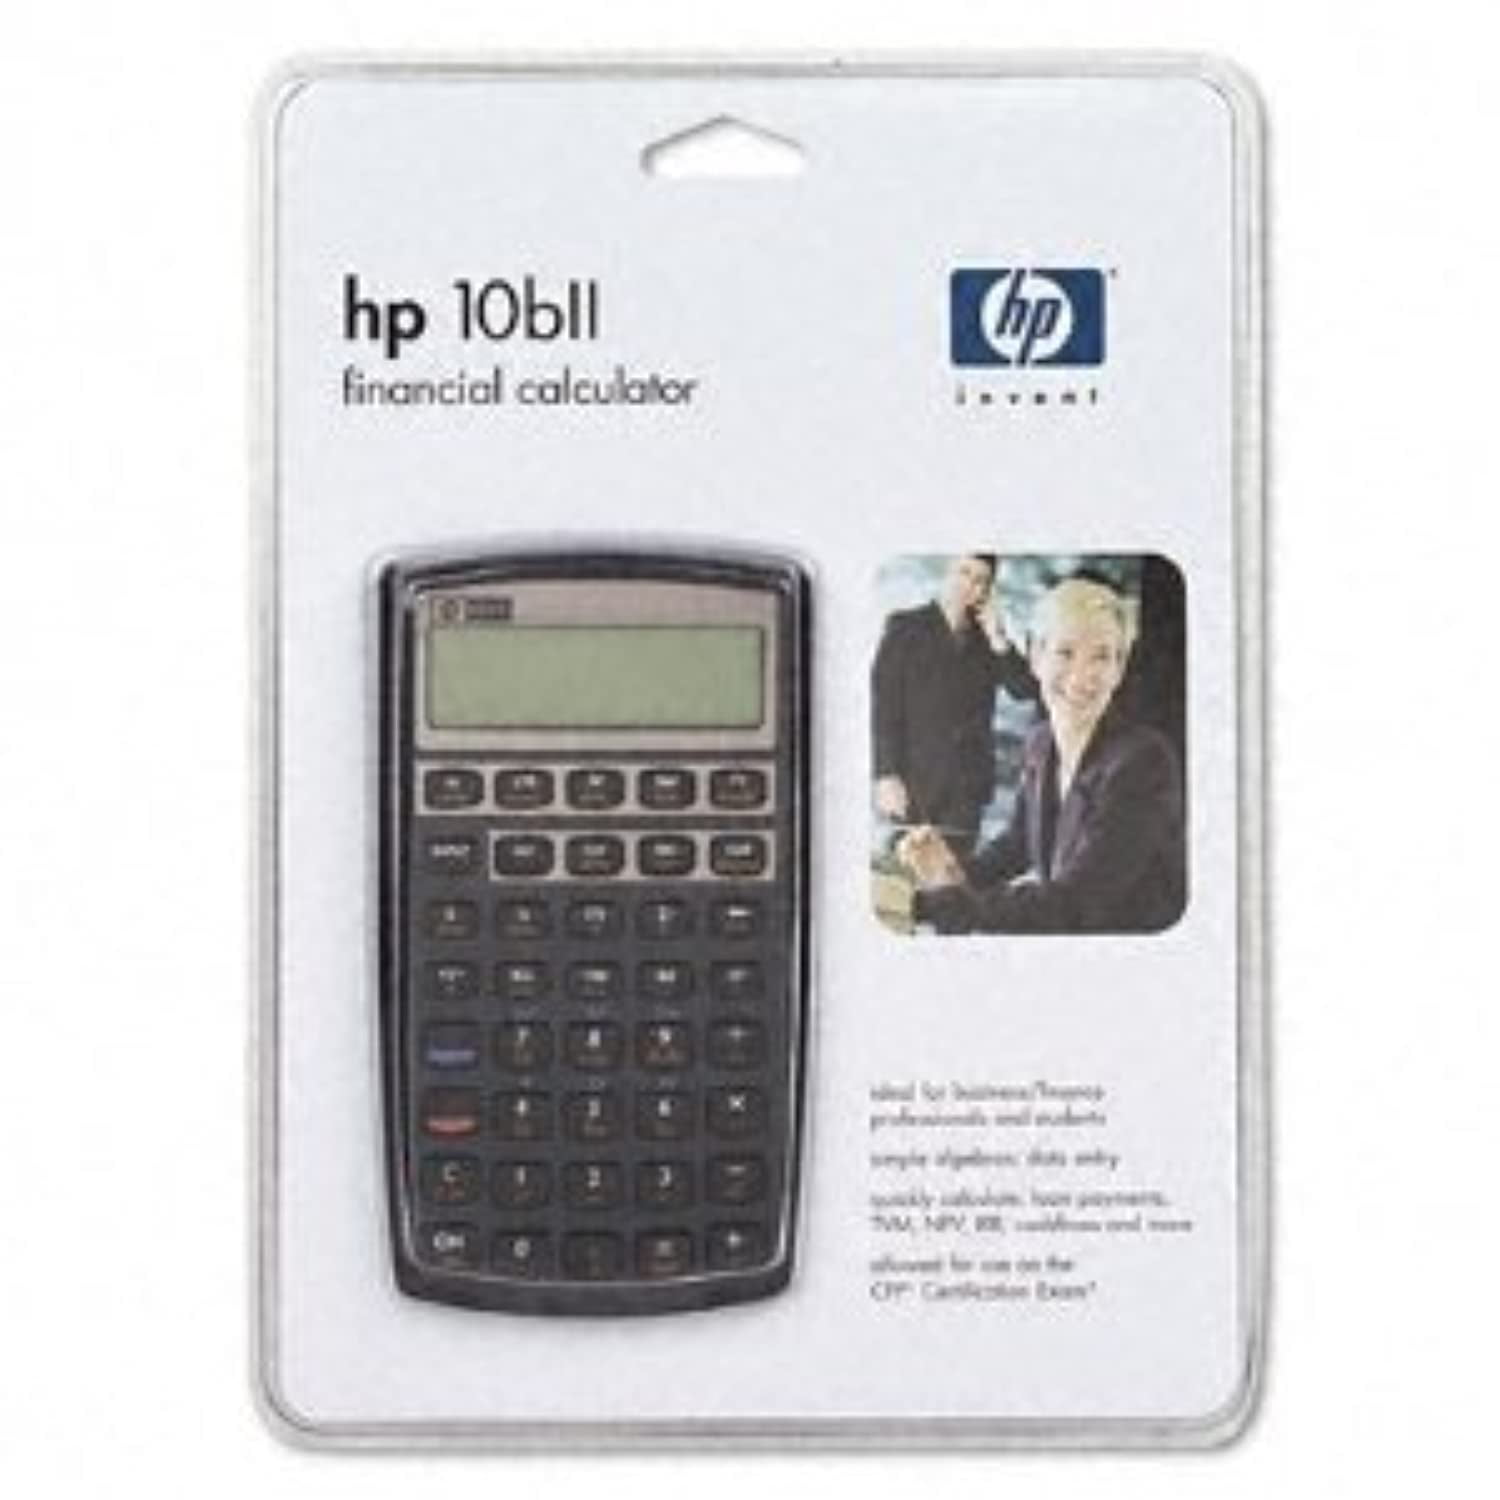 hp 10bii financial calculator price india